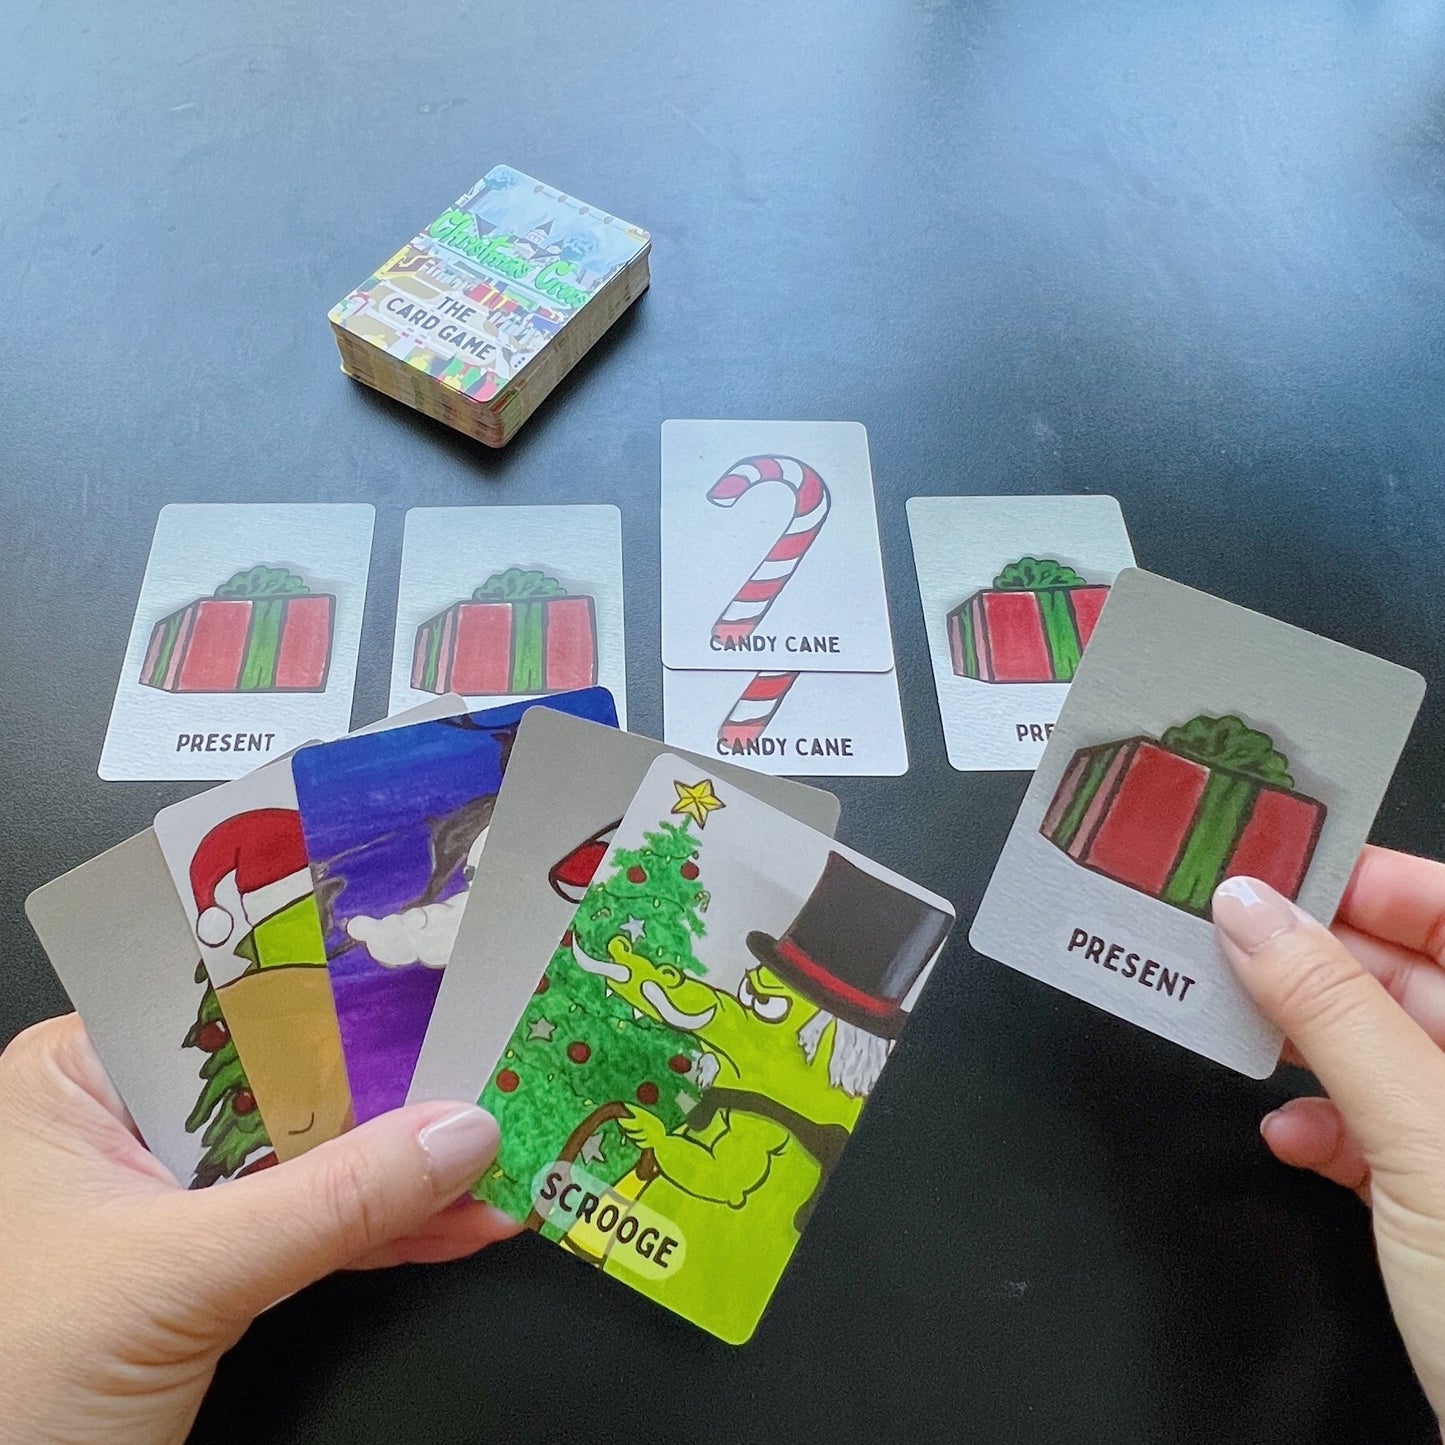 Christmas Crocs: The Card Game